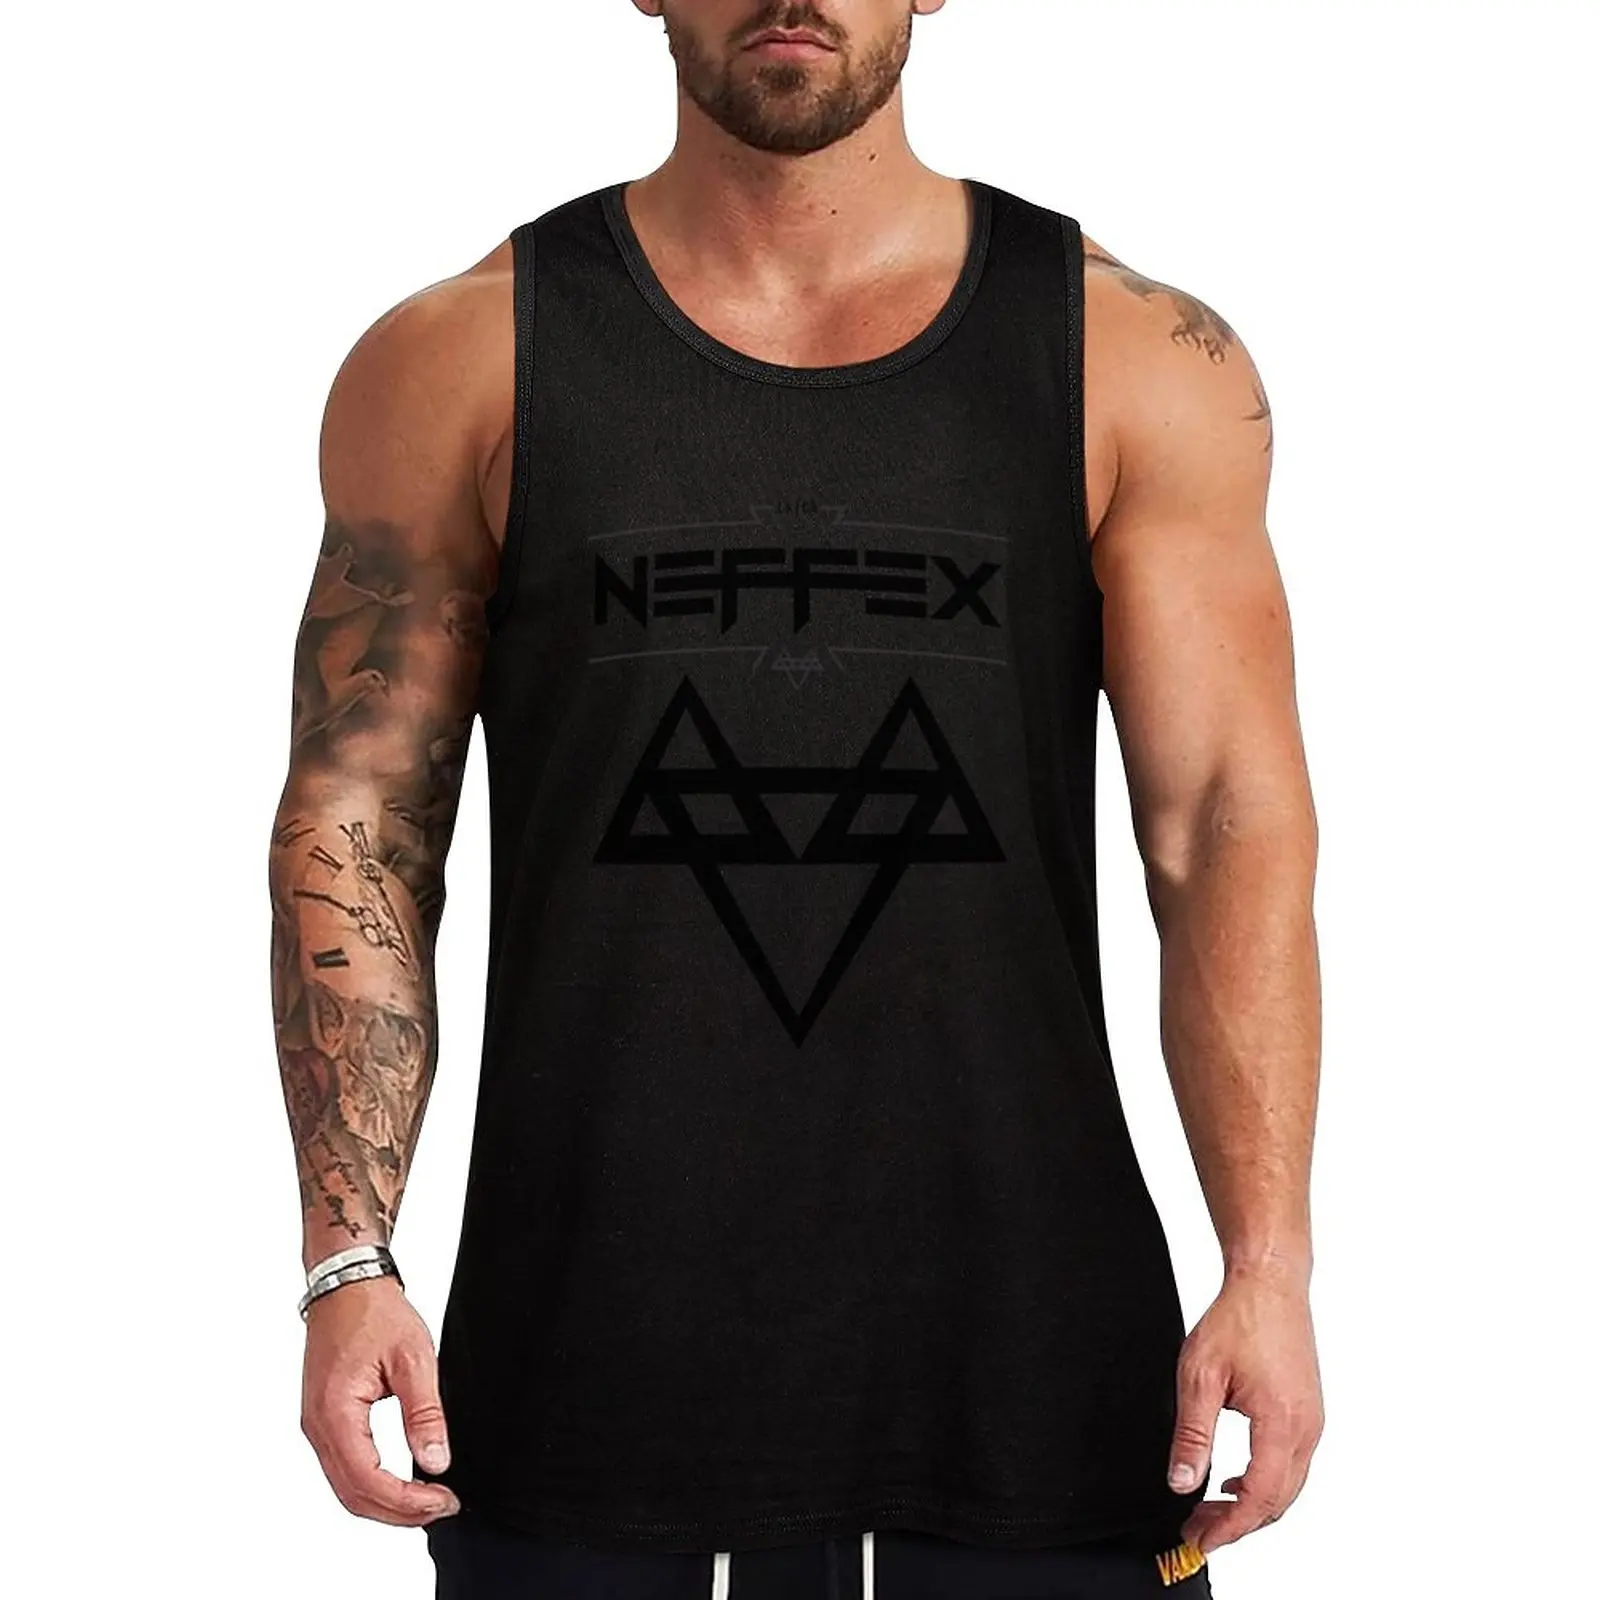 

Майка NEFFEX мужская черная с логотипом, одежда для спортзала, без рукавов, для фитнеса и бодибилдинга, 2 шт.